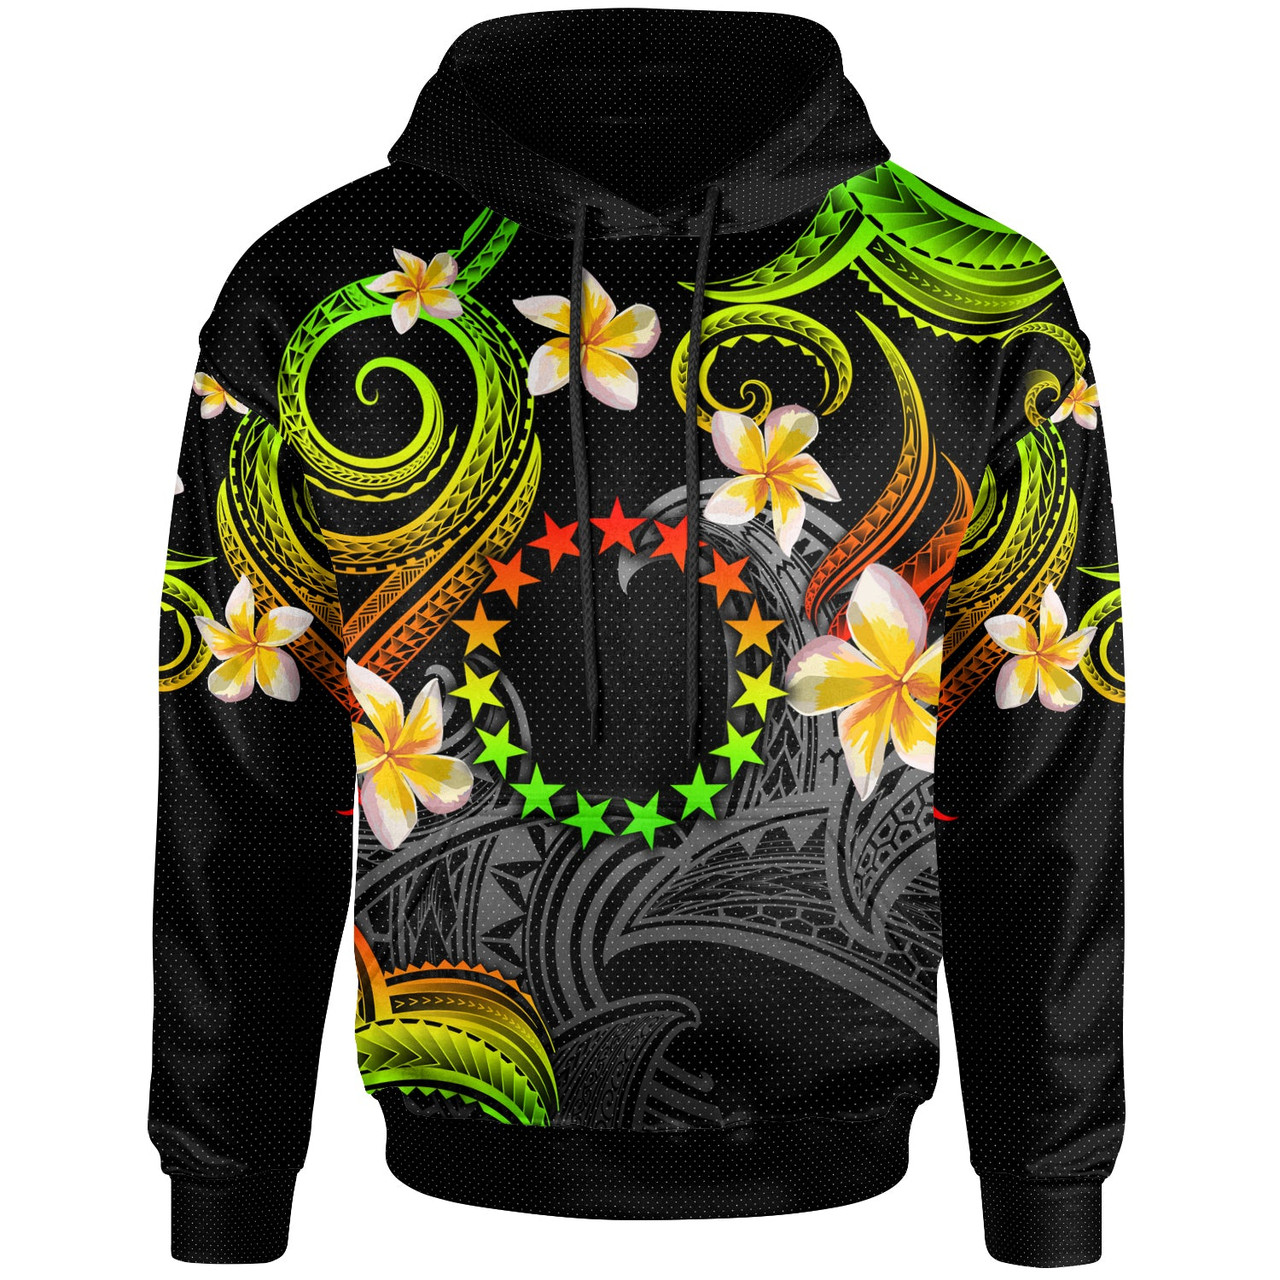 Cook Islands Hoodie - Custom Personalised Polynesian Waves with Plumeria Flowers (Reggae)